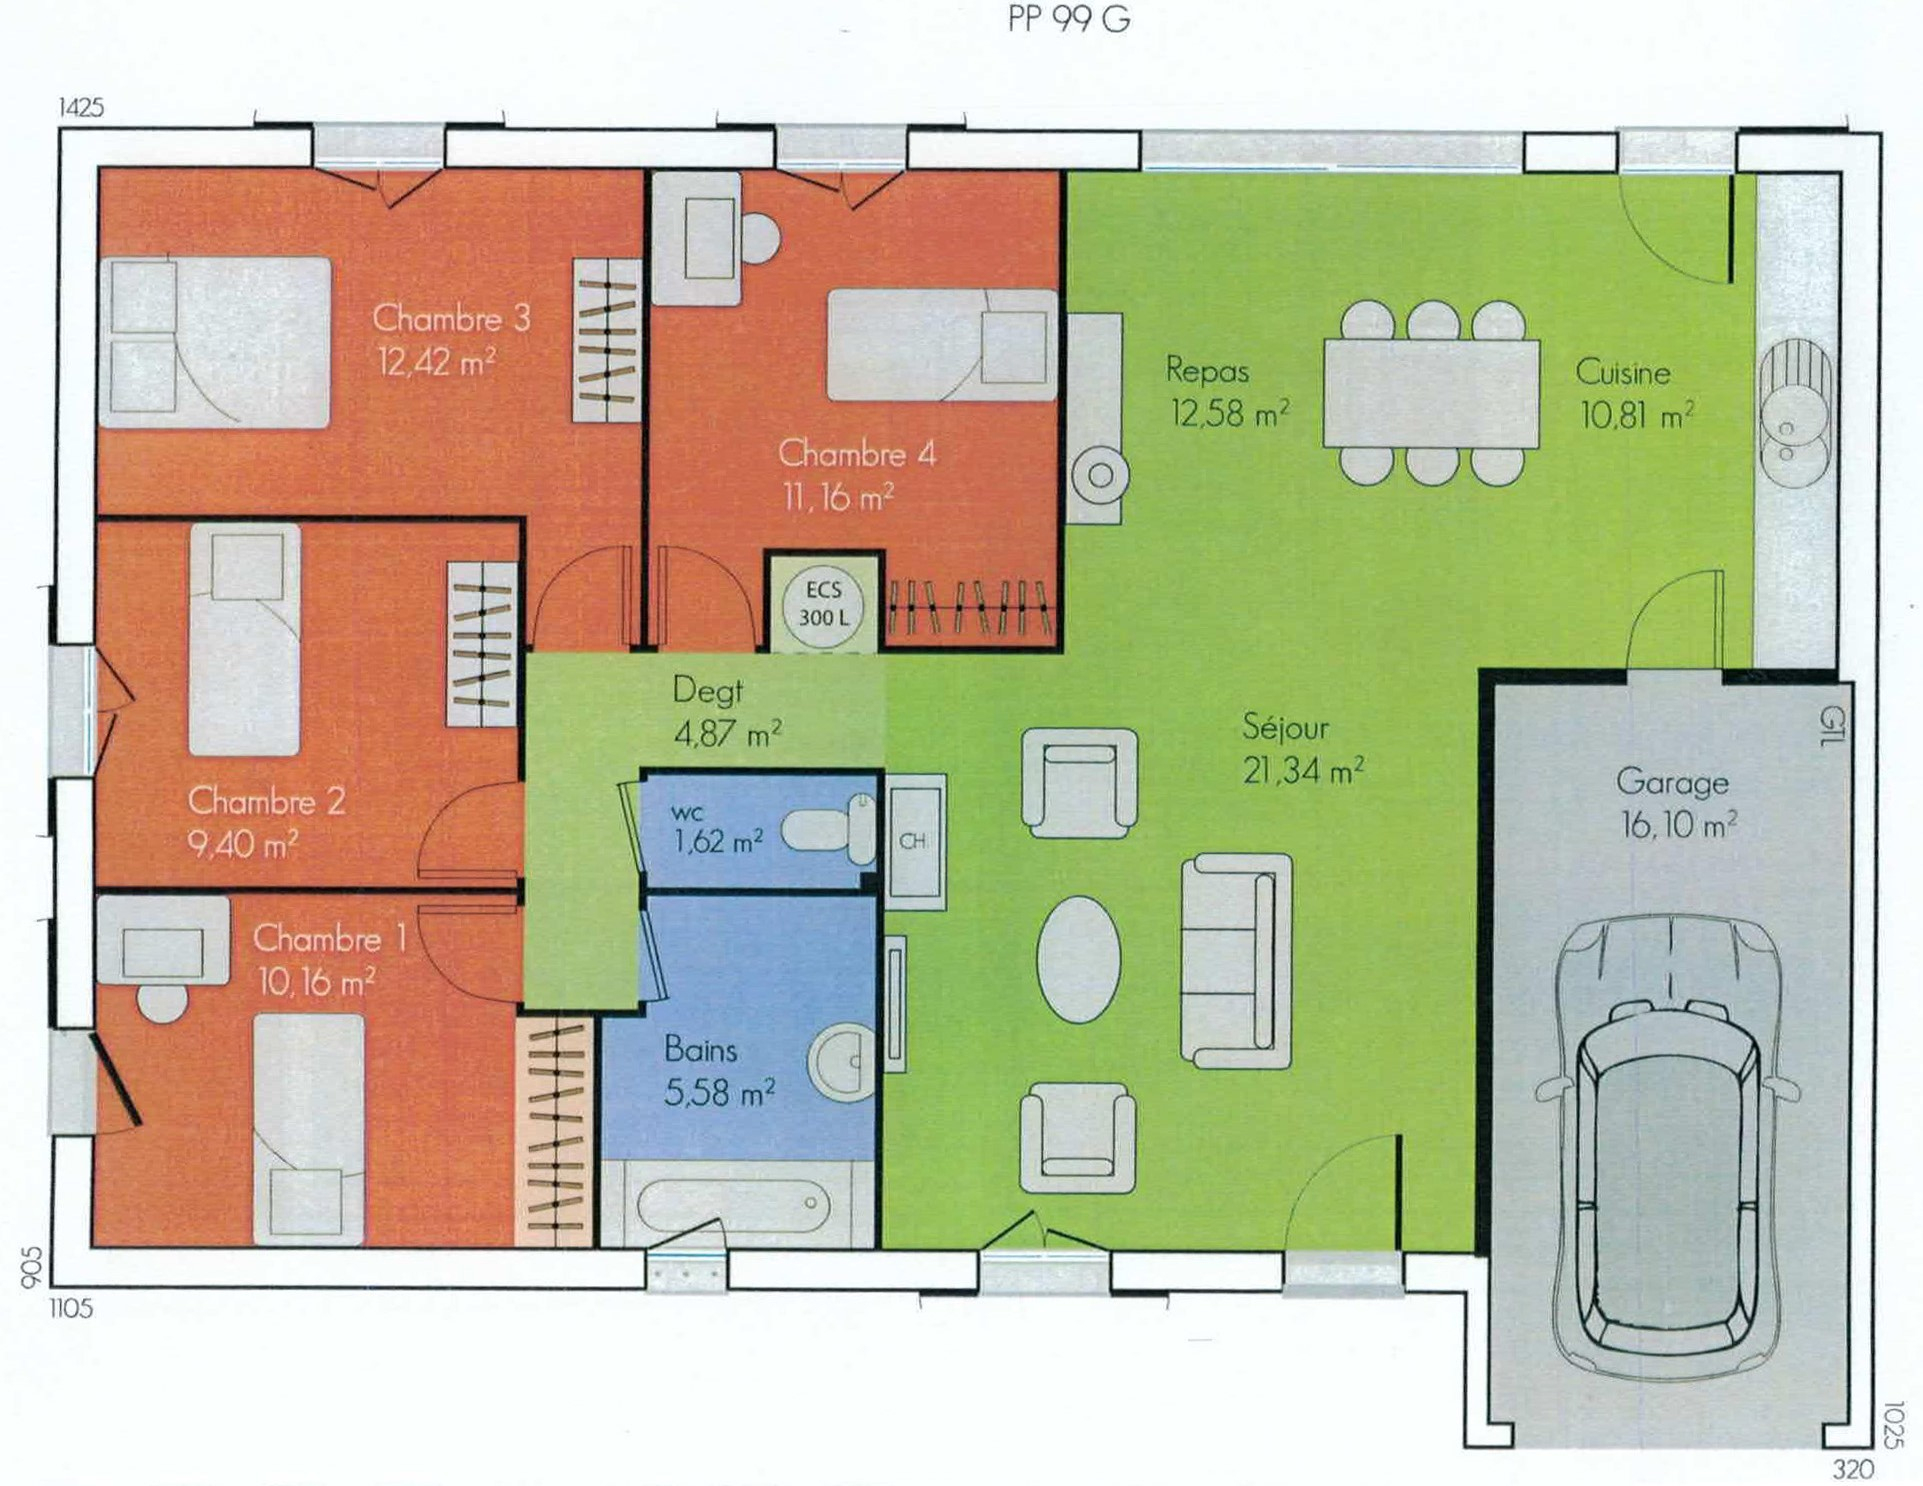 Maison Plain Pied 4 Chambres Avec Garage avec Plan Maison 4 Chambres 3D 